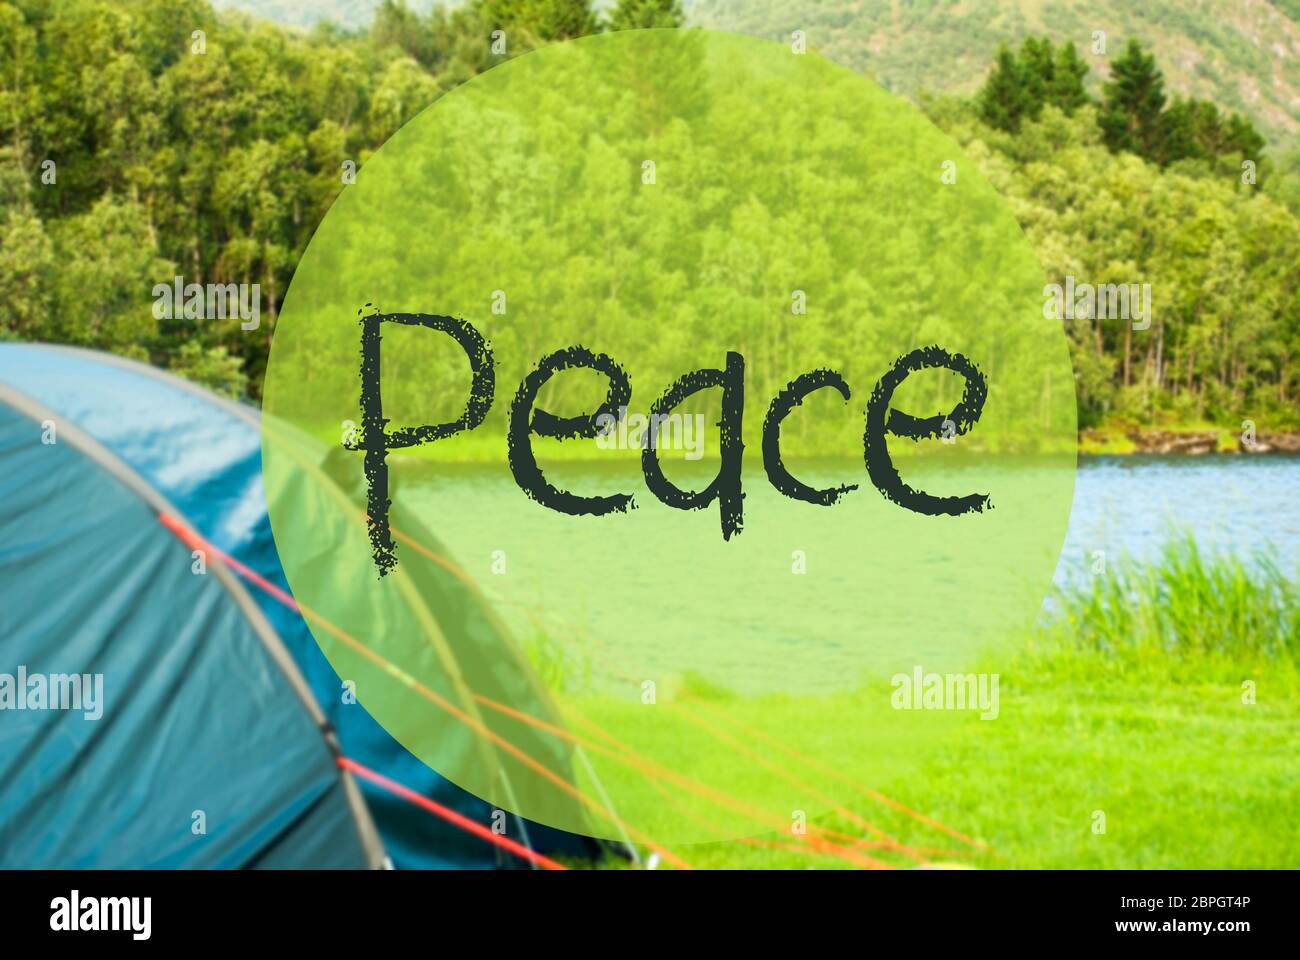 Englischer Text Frieden. Campingurlaub in Norwegen am See oder Fluss. Grünes Gras und Wald im Hintergrund. Zelt auf der Vorderseite Stockfoto